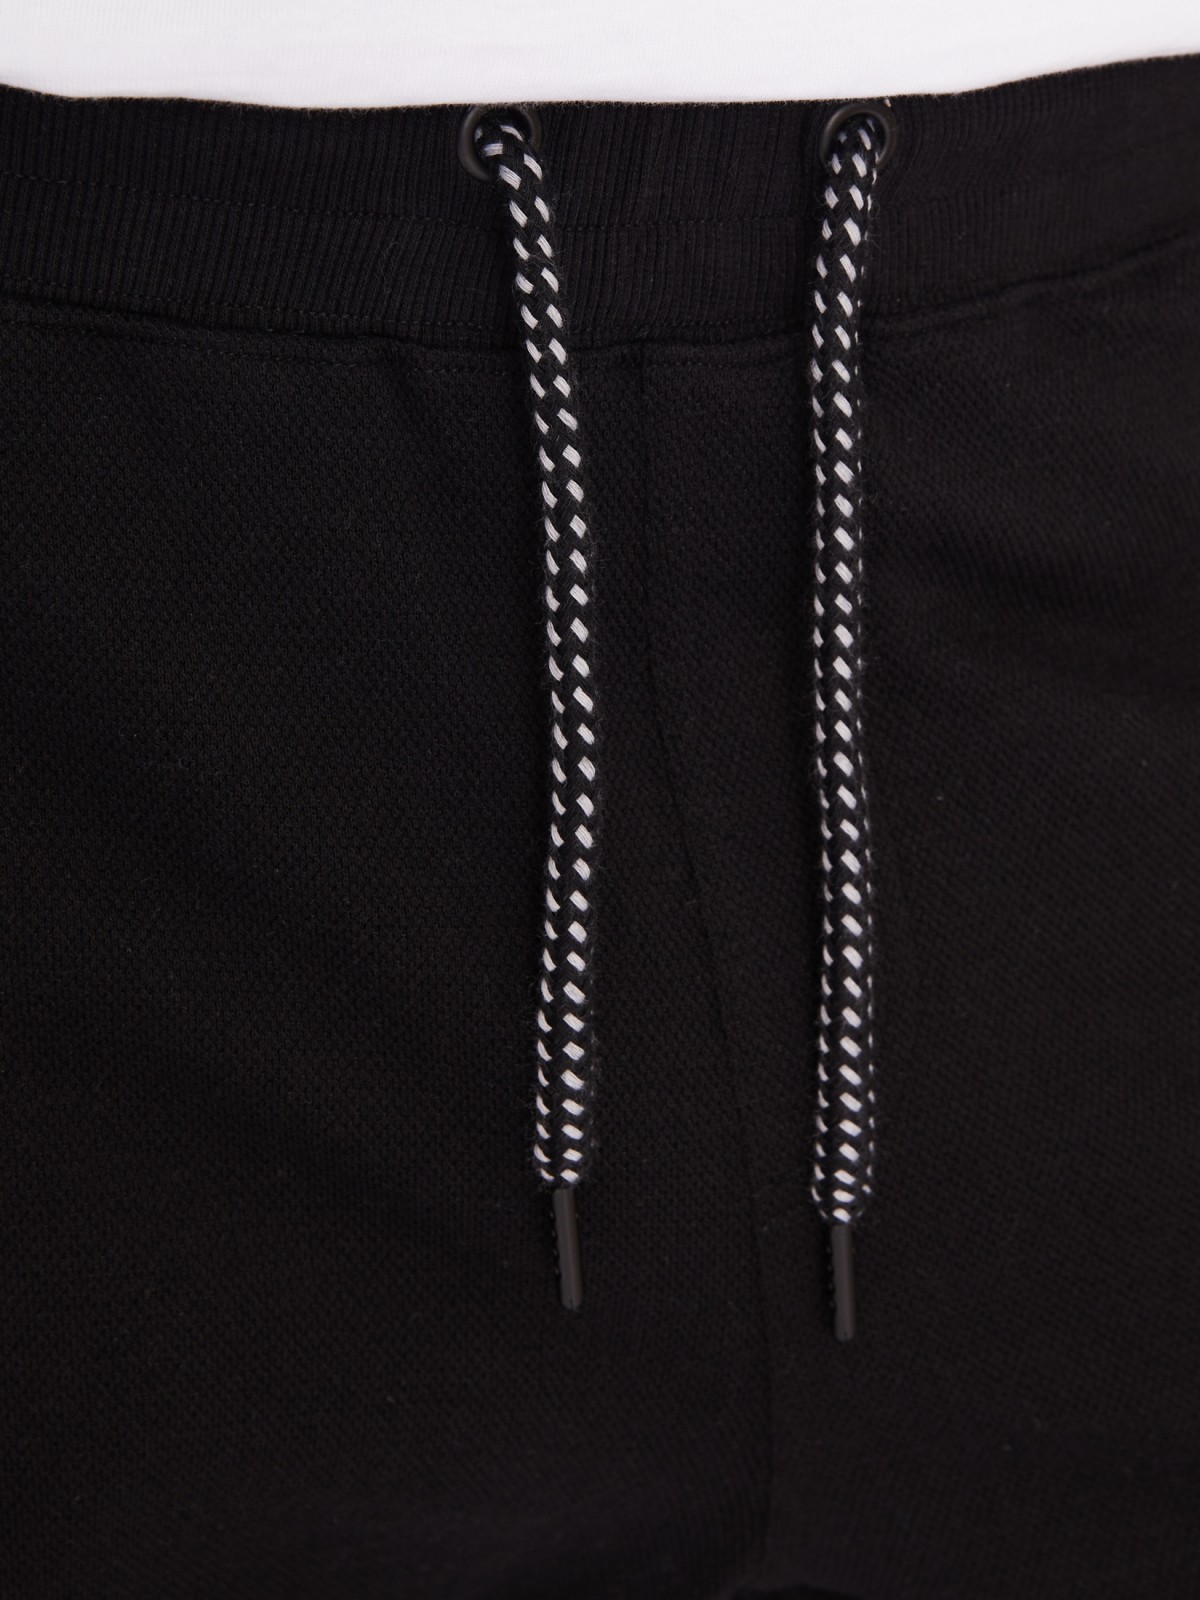 Трикотажные брюки-джоггеры в спортивном стиле zolla 21331762F012, цвет черный, размер M - фото 5